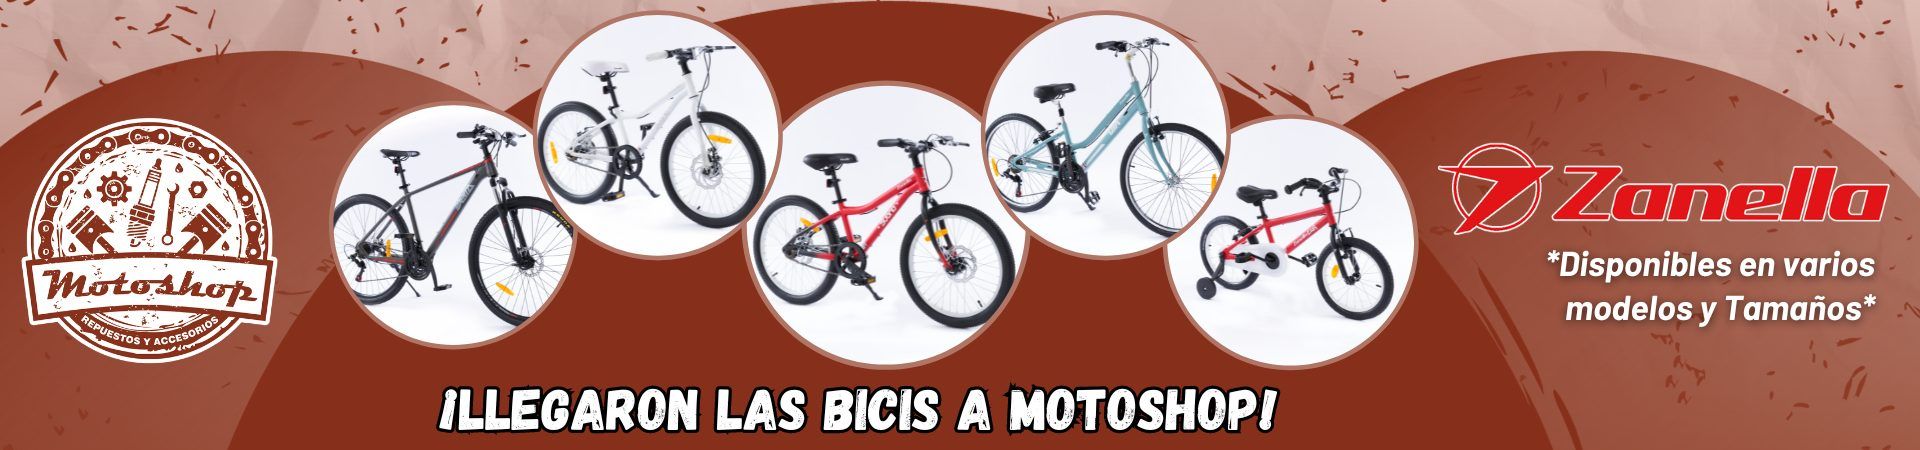 Banner Web Bicicletas Zanella motoshop uruguay